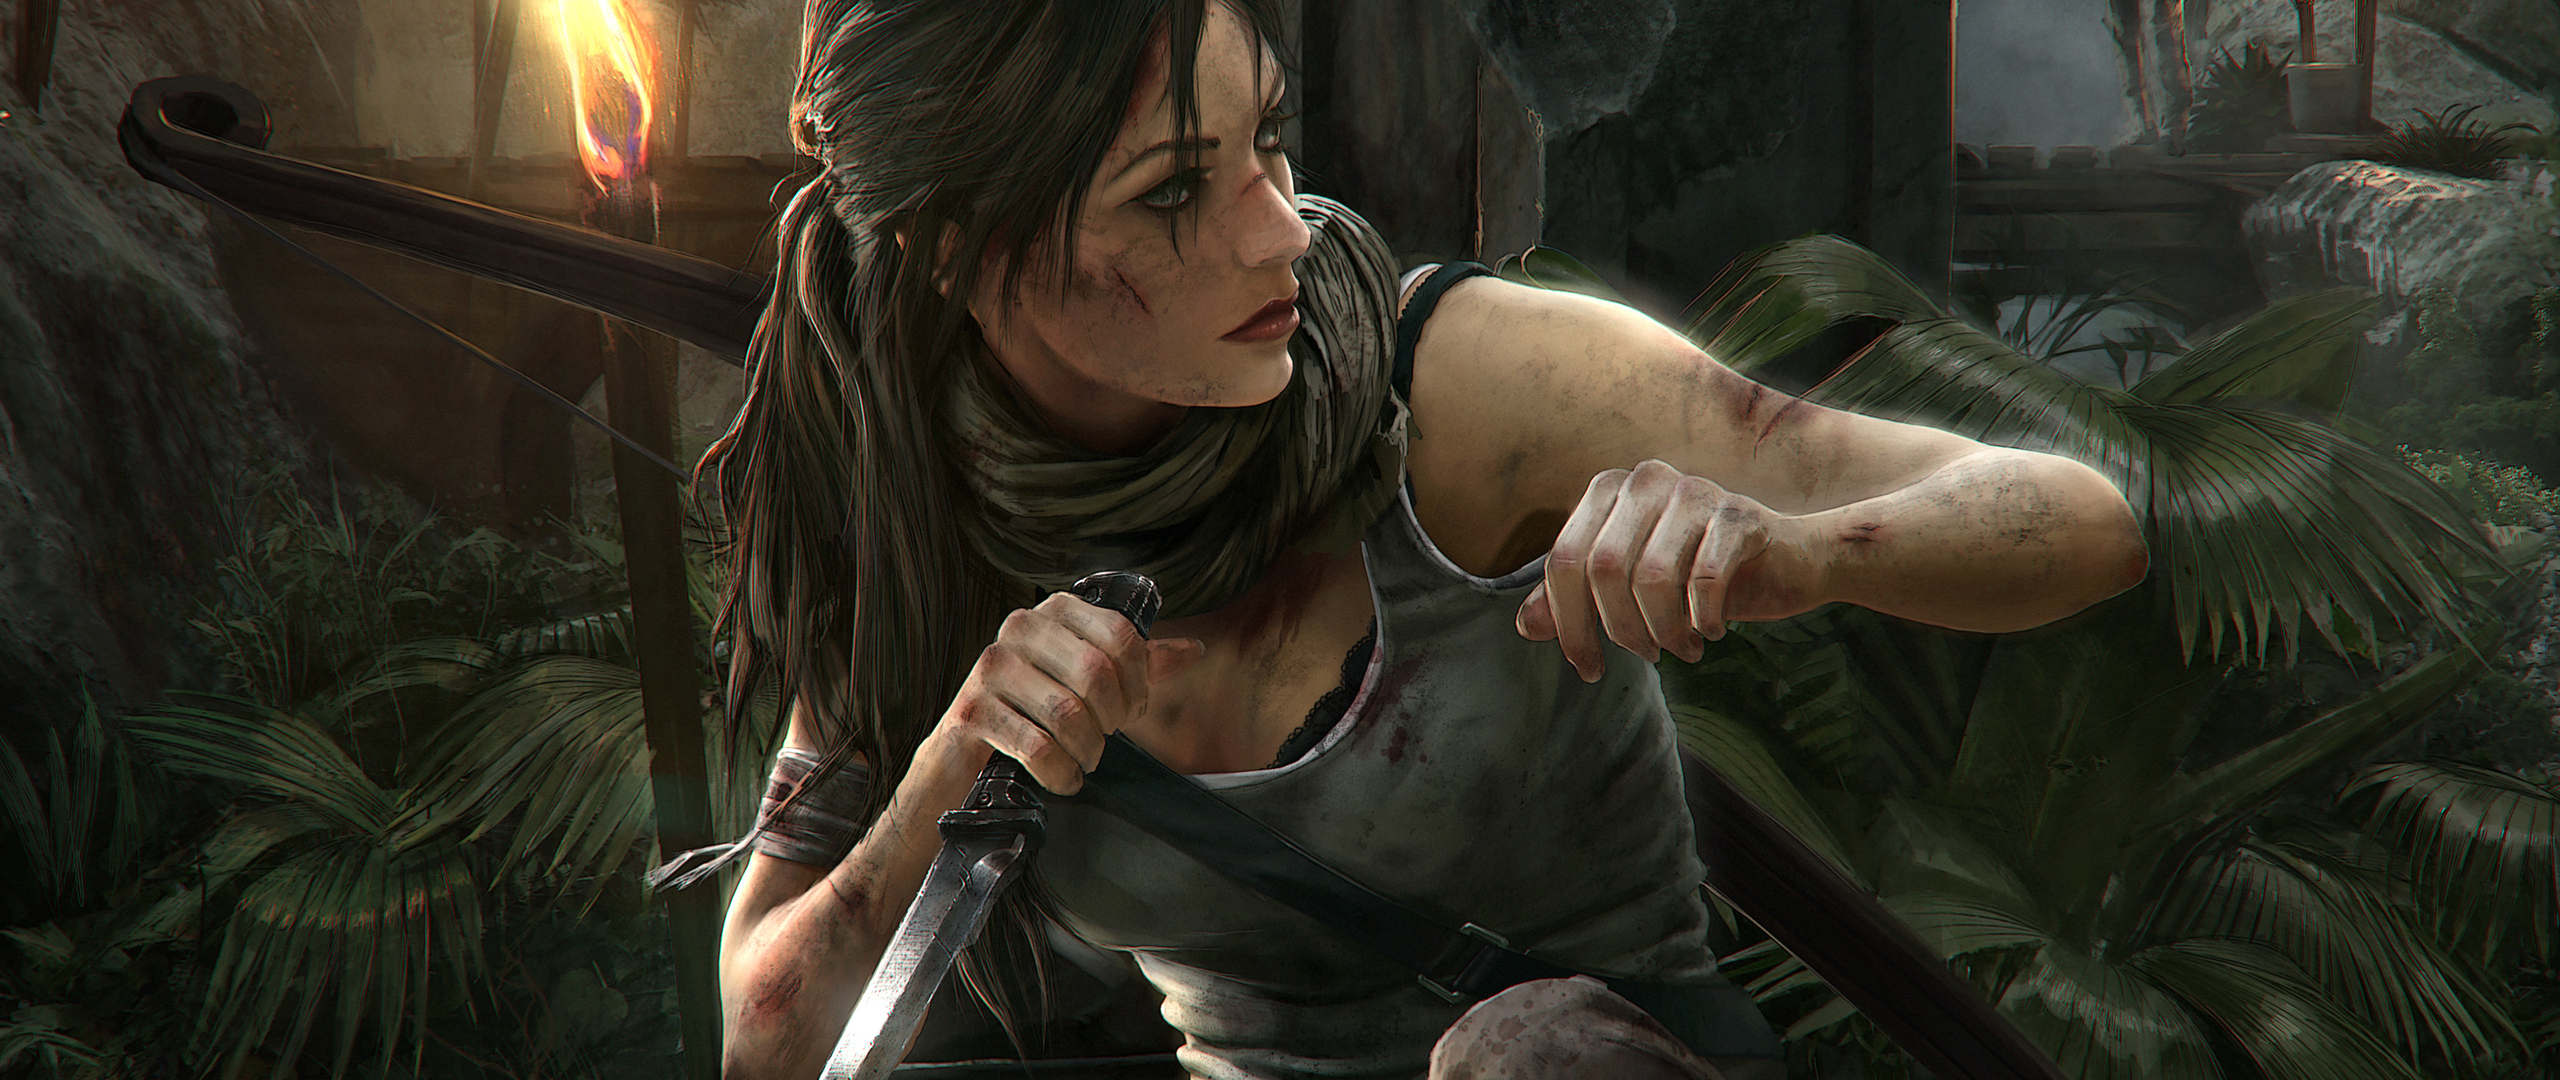 Tomb Raider 4k 5k 2018 In 2560x1080 Resolution. tomb-raider-4k-5k-2018-ye.j...